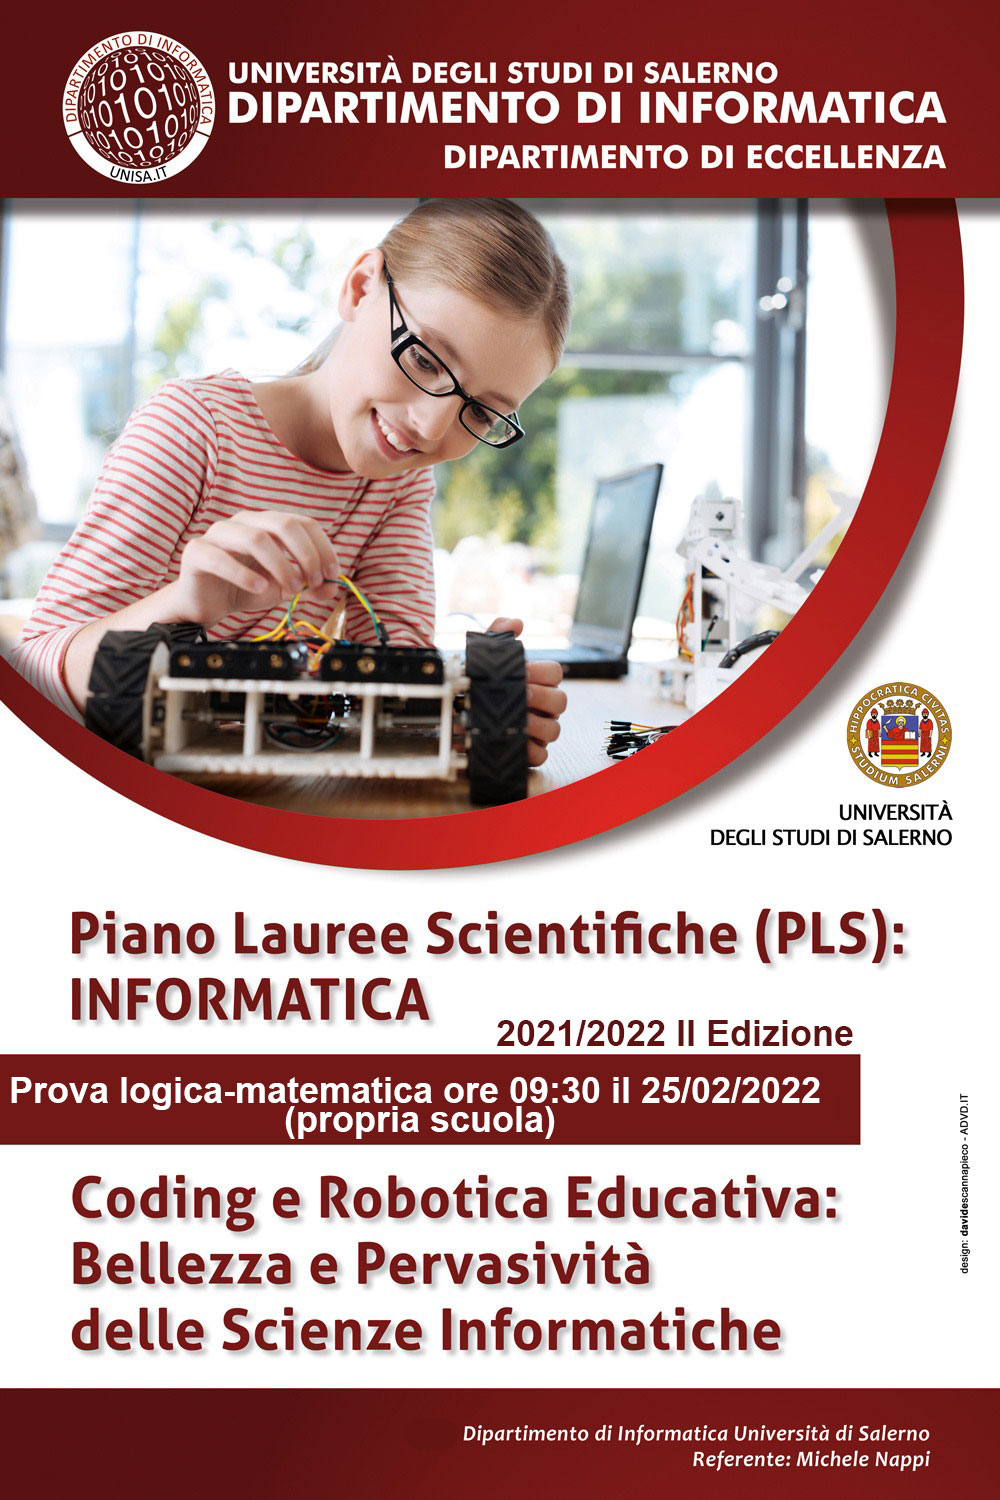 Progetto PLS (Piano Lauree Scientifiche) anno 2021/22